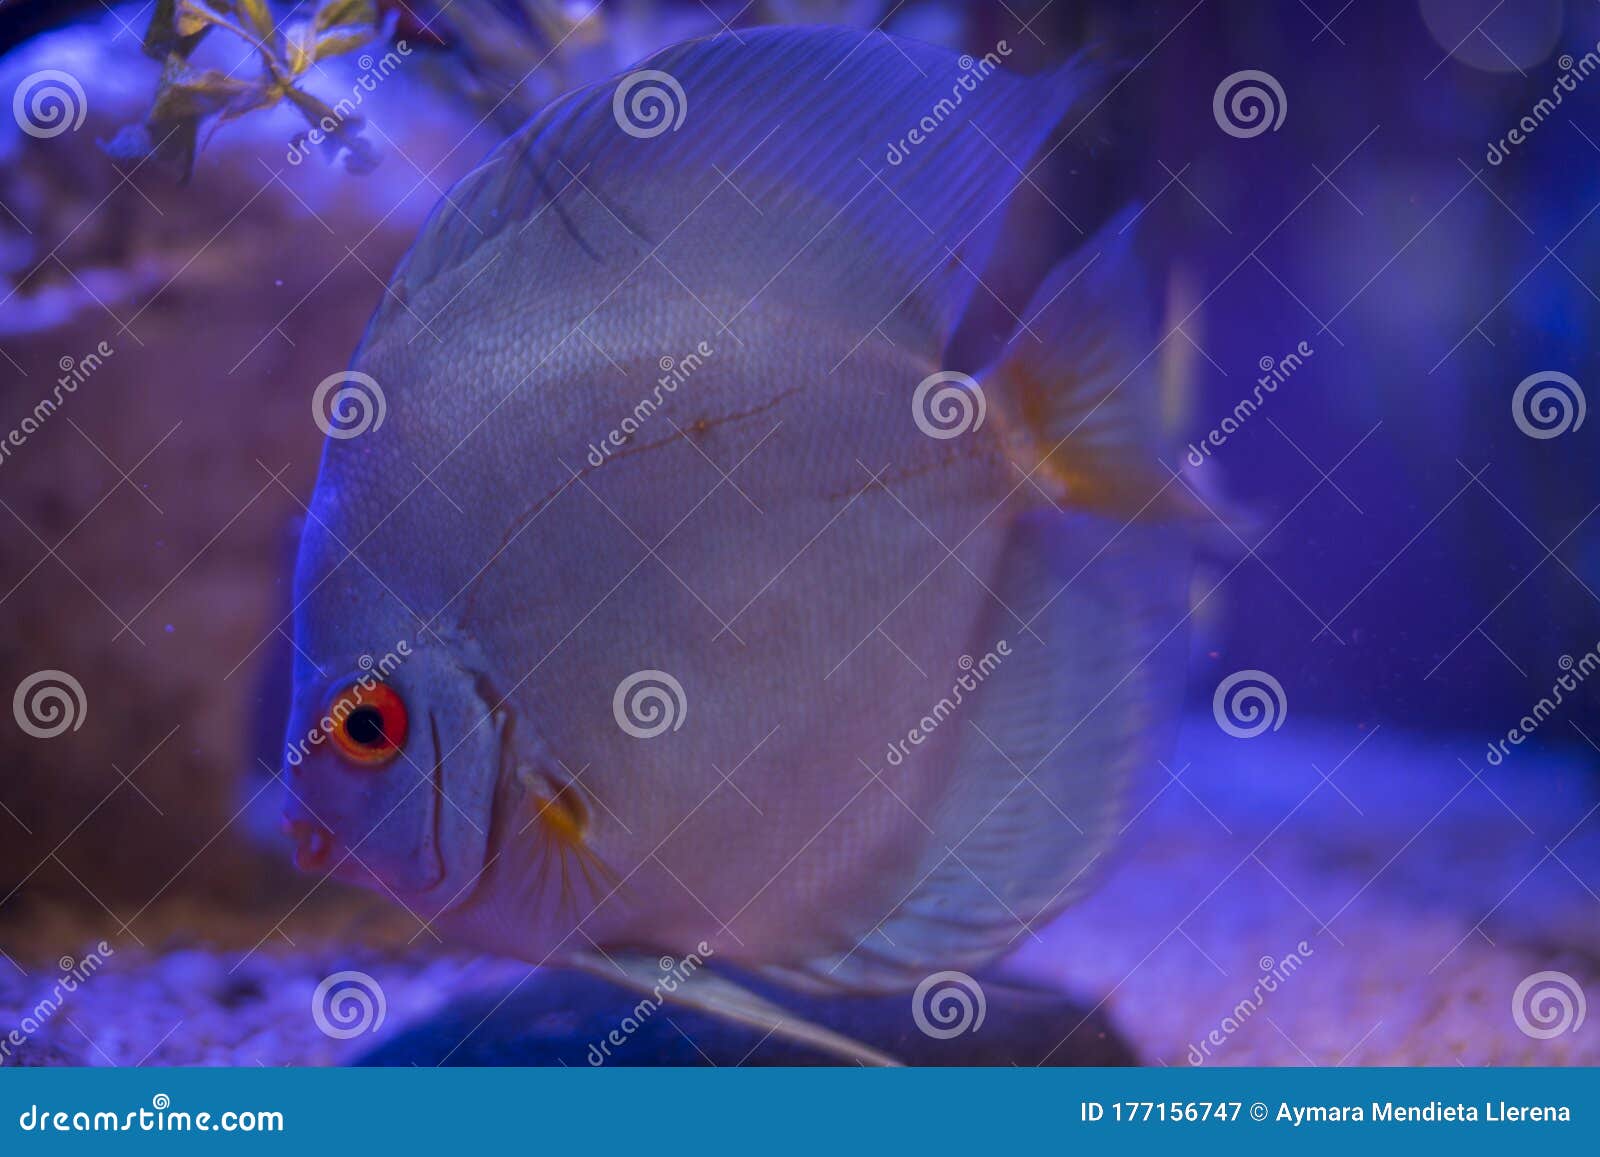 blue discus swims in the aquarium